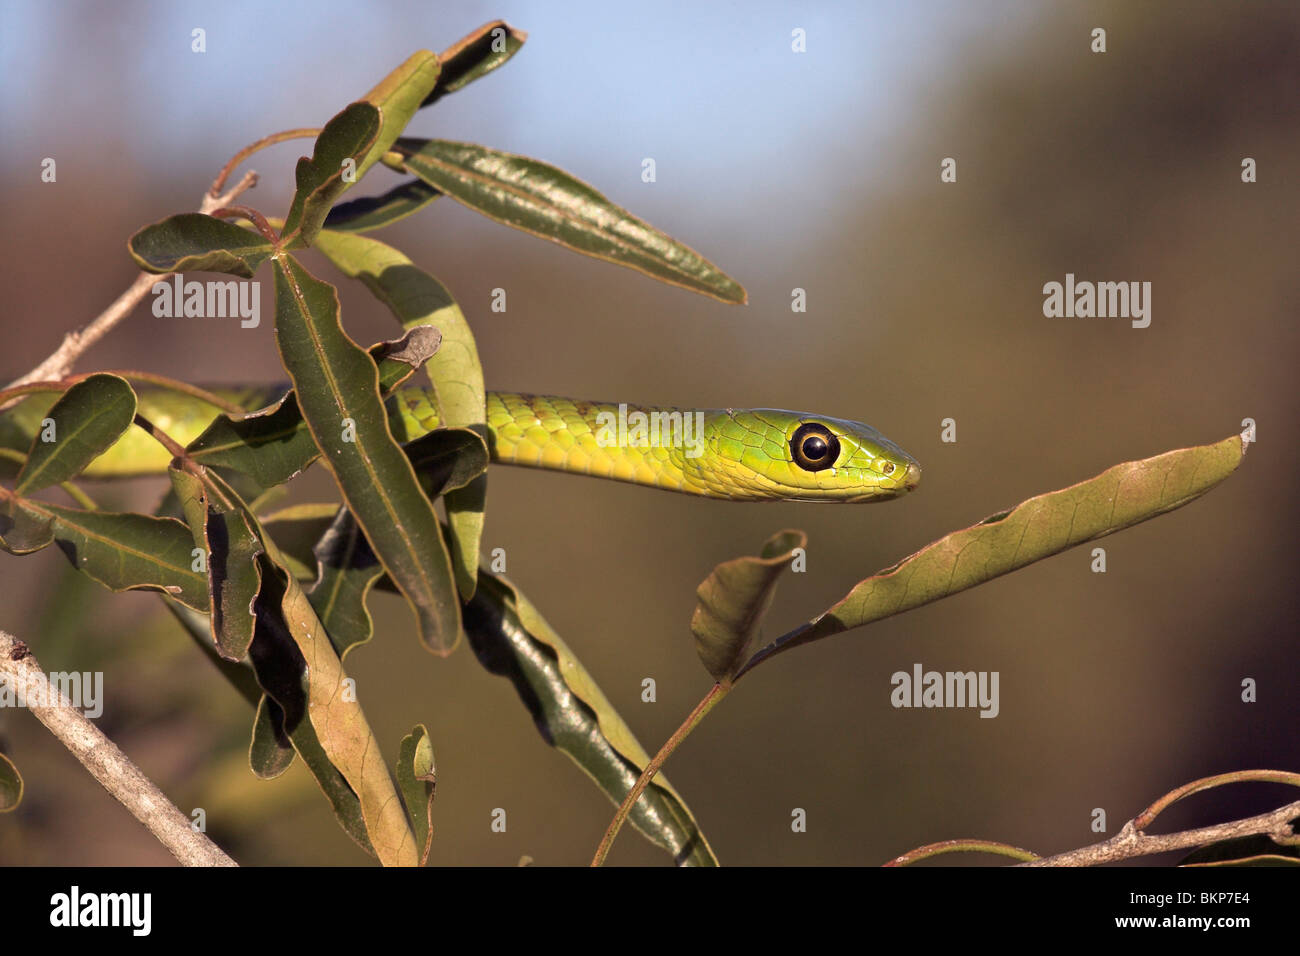 Portret d'un serpent vert natal dans un arbre Banque D'Images